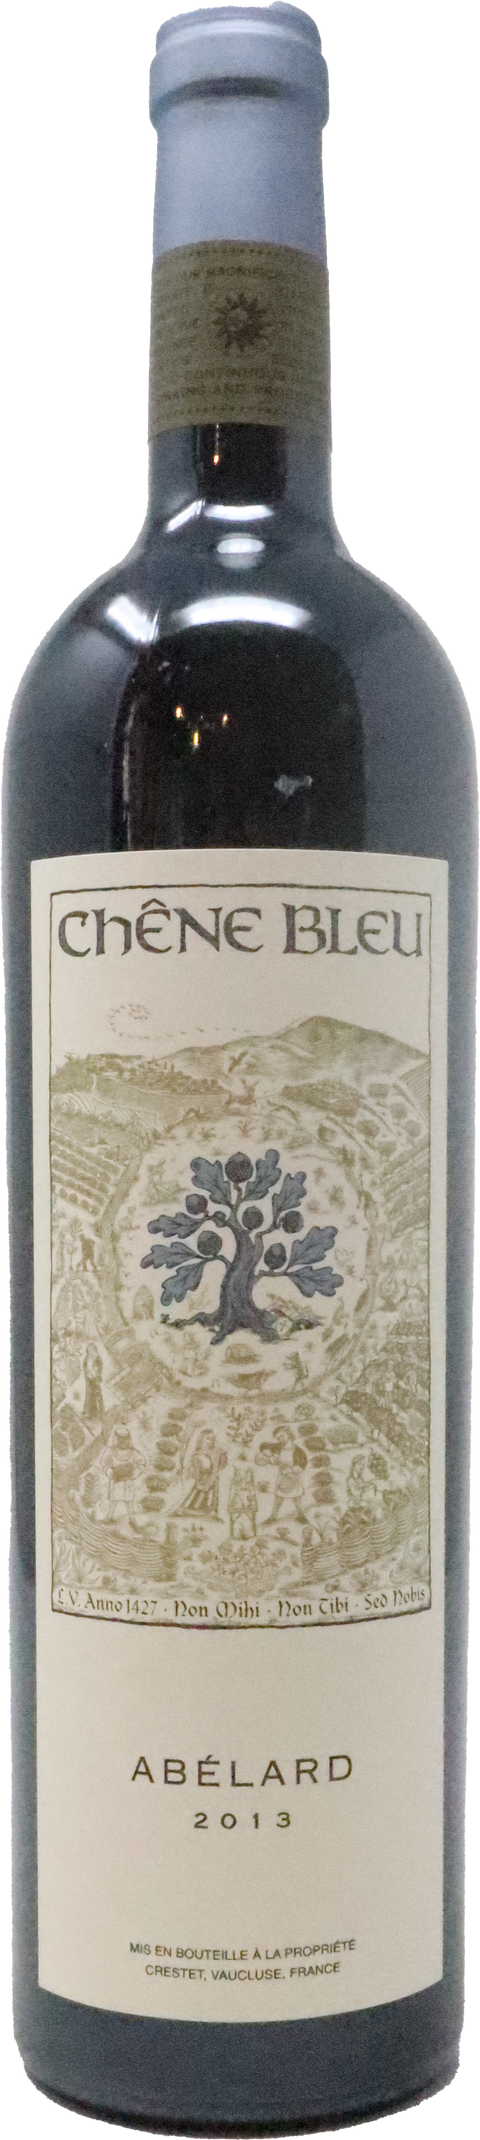 2014 Chêne Bleu "Abélard" VDP Vaucluse, Rhone Valley, France